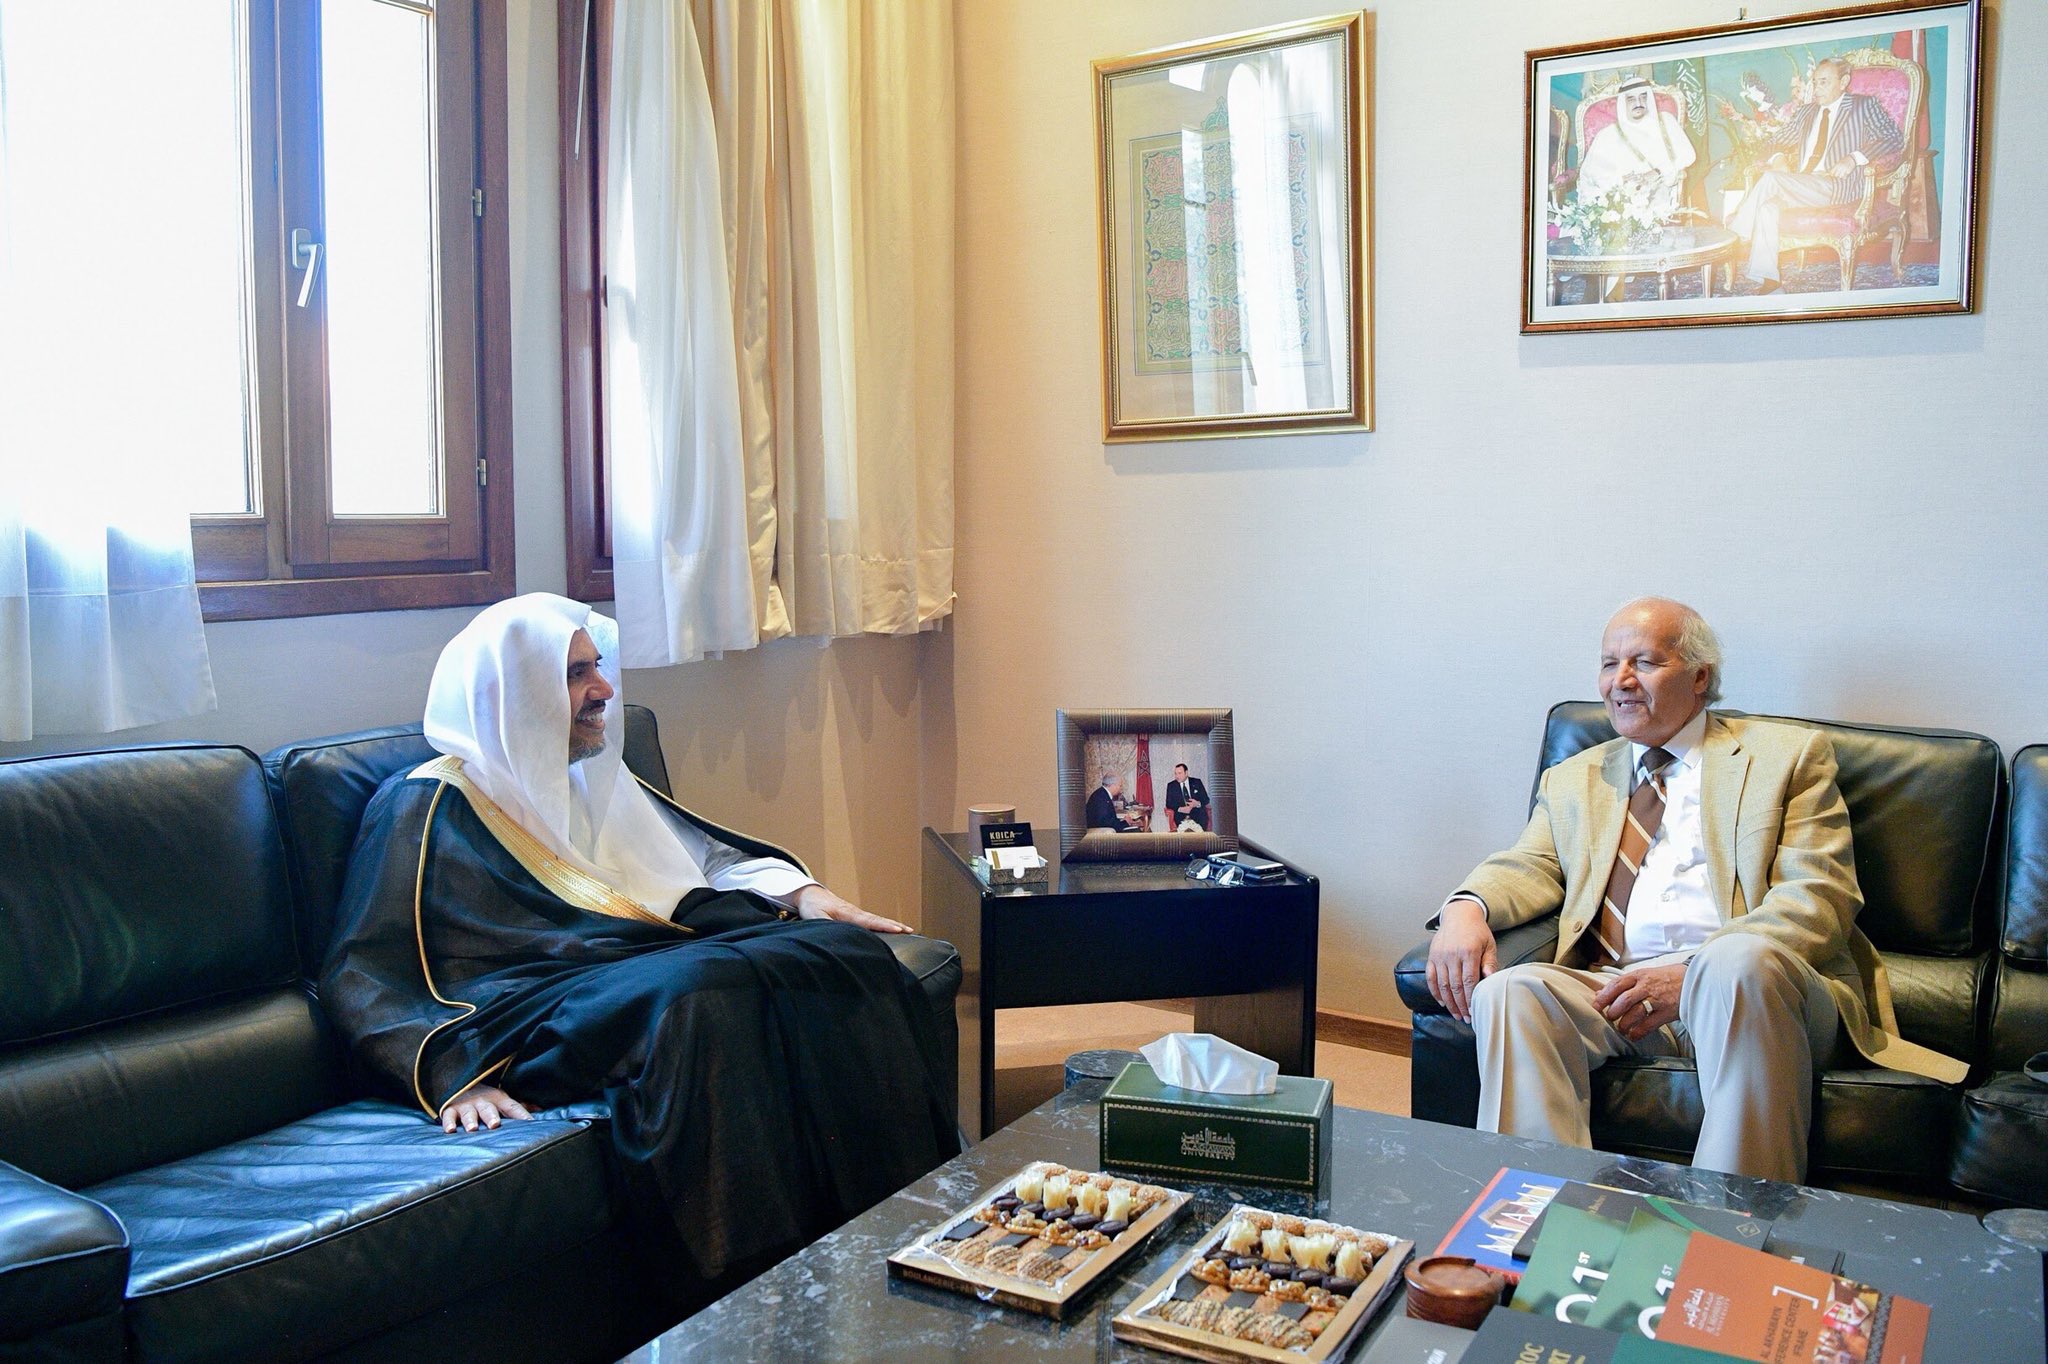 L'Université Alakhawayn au Maroc reçoit le SG de la Ligue Islamique Mondiale D.Mohamed AlIssa où il a eu un une rencontre avec son doyen et ses membres pour traiter de sujets d’intérêt commun.